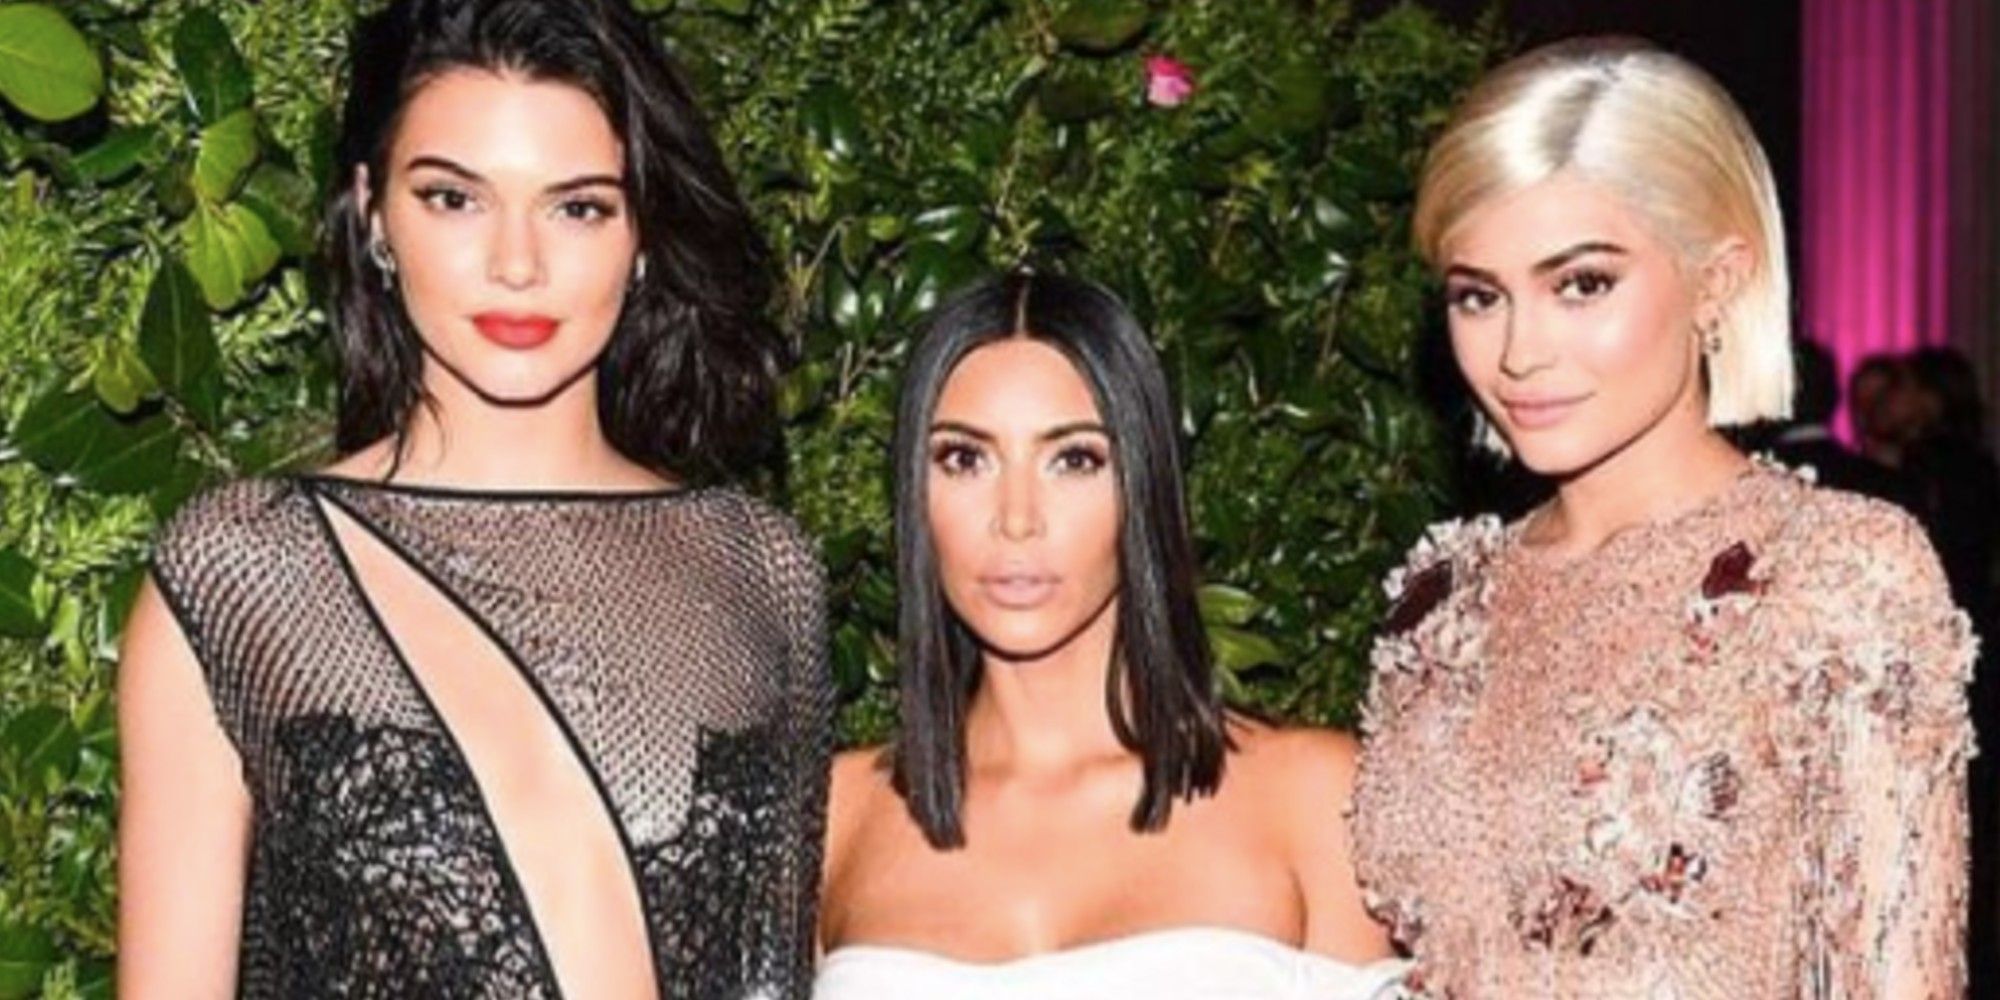 Kim Kardashian, Kendall and Kylie Jenner model Skims lingerie for V-Day